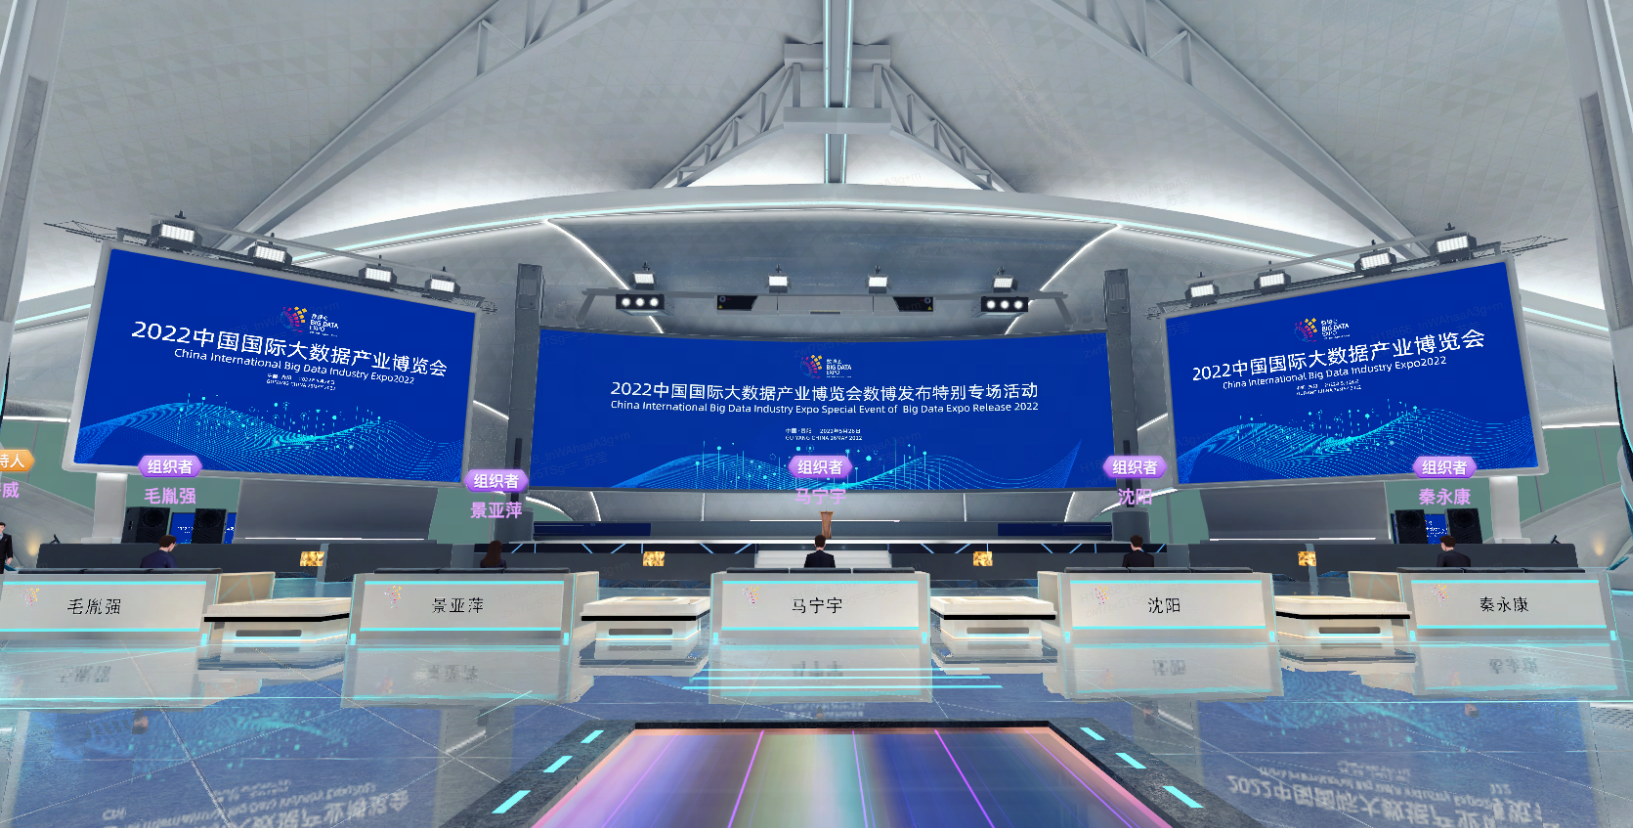 这是一个现代化的会议场馆内部，有蓝色主题的显示屏，展示着中英文信息，前方设有整齐的接待台和通道。